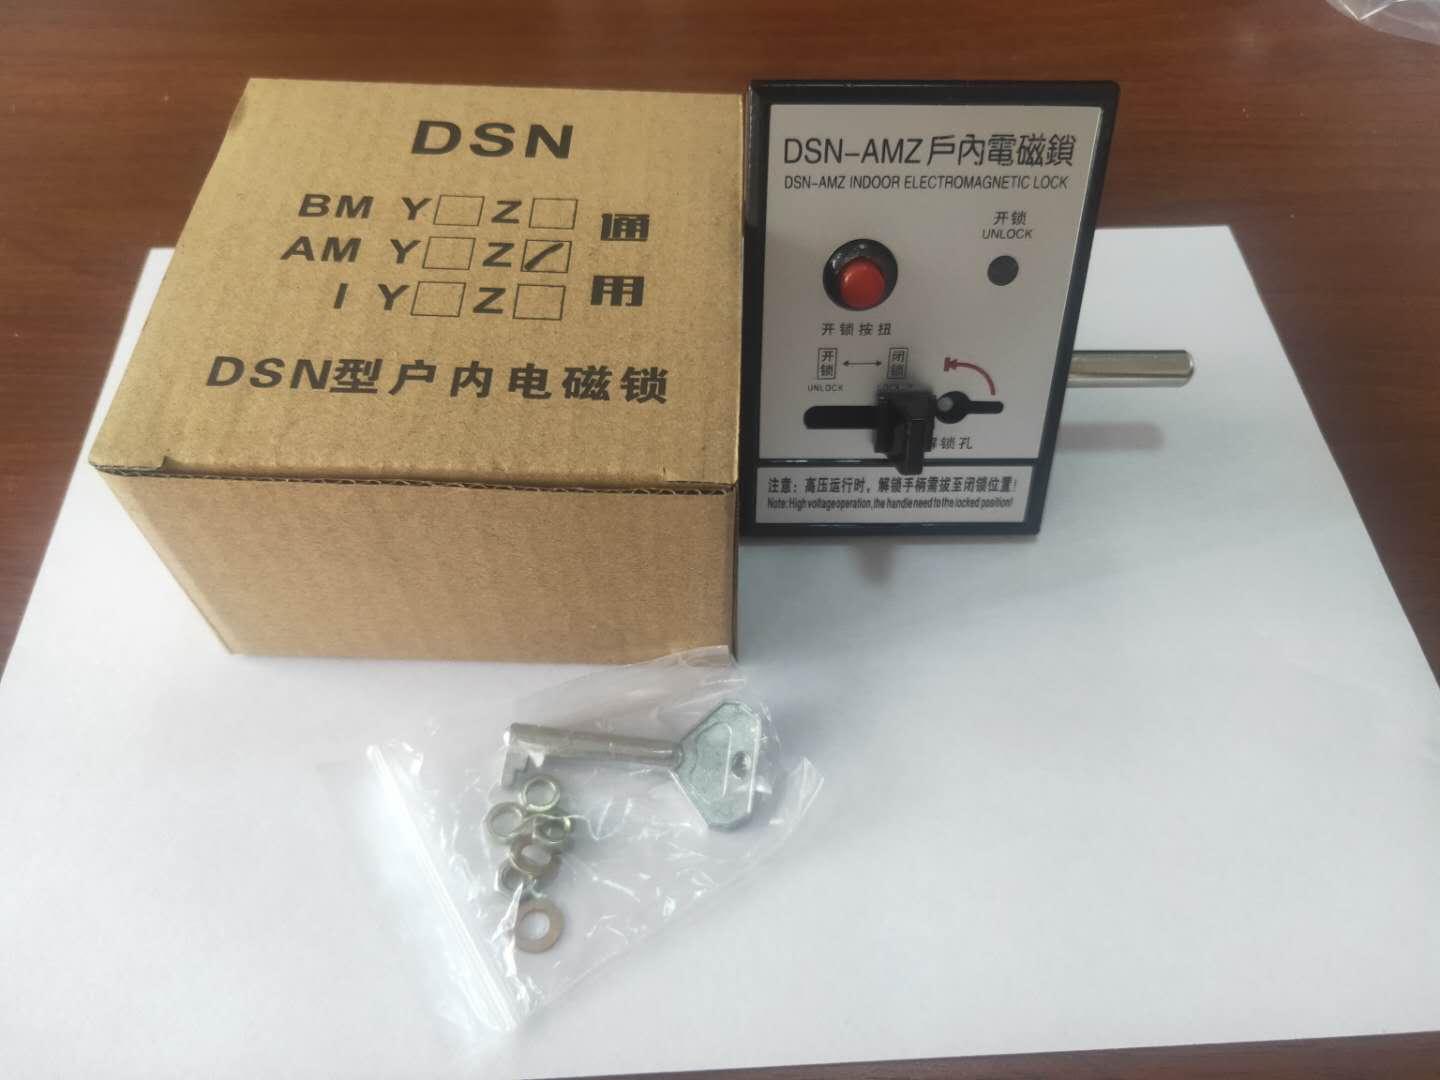 DSN-BM型户内电磁锁